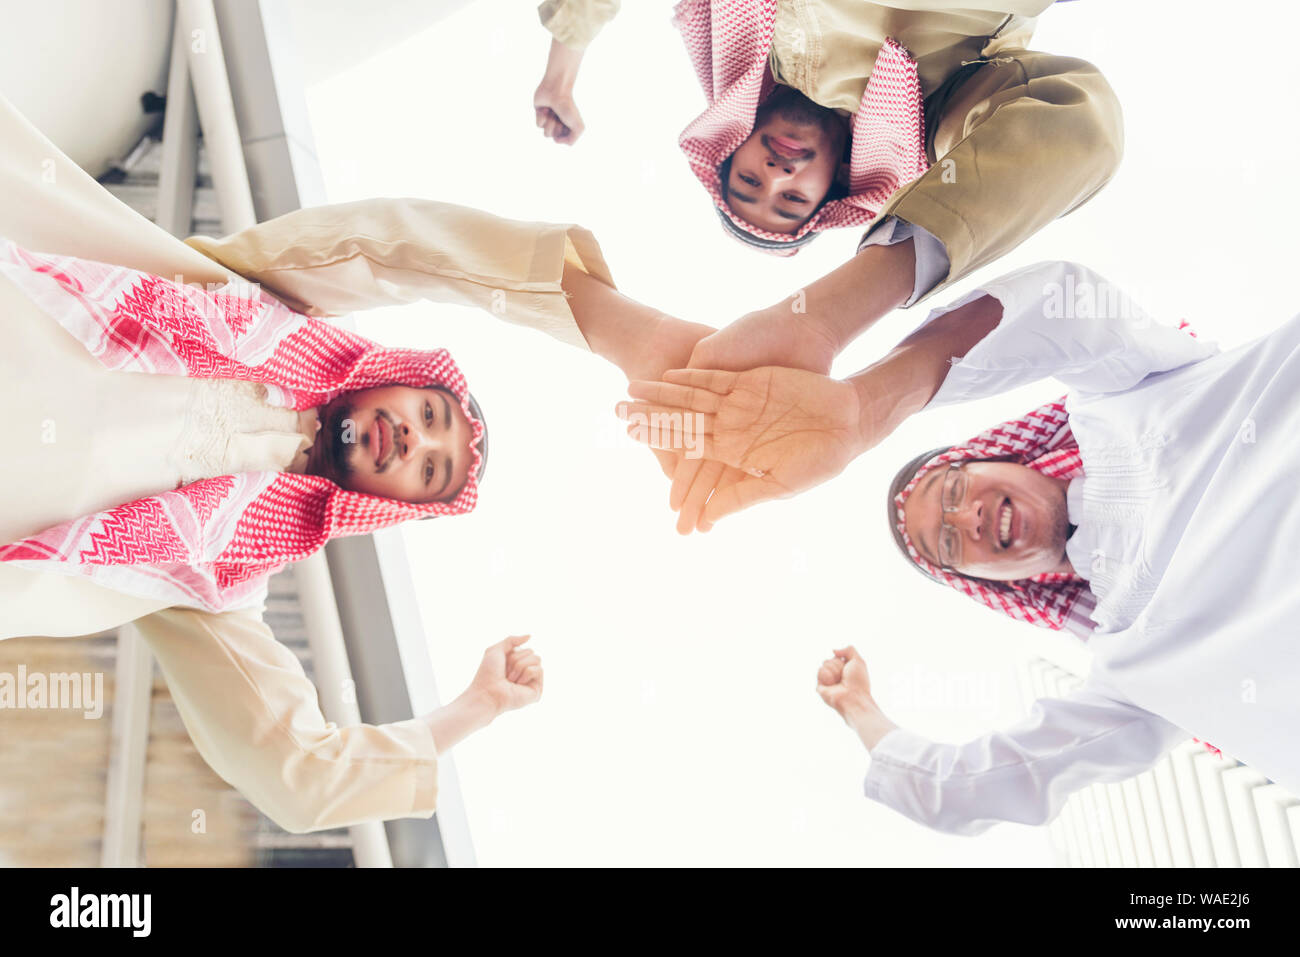 Arabischer mann Teamarbeit Hände schütteln Konzept der Partnerschaft. Stockfoto